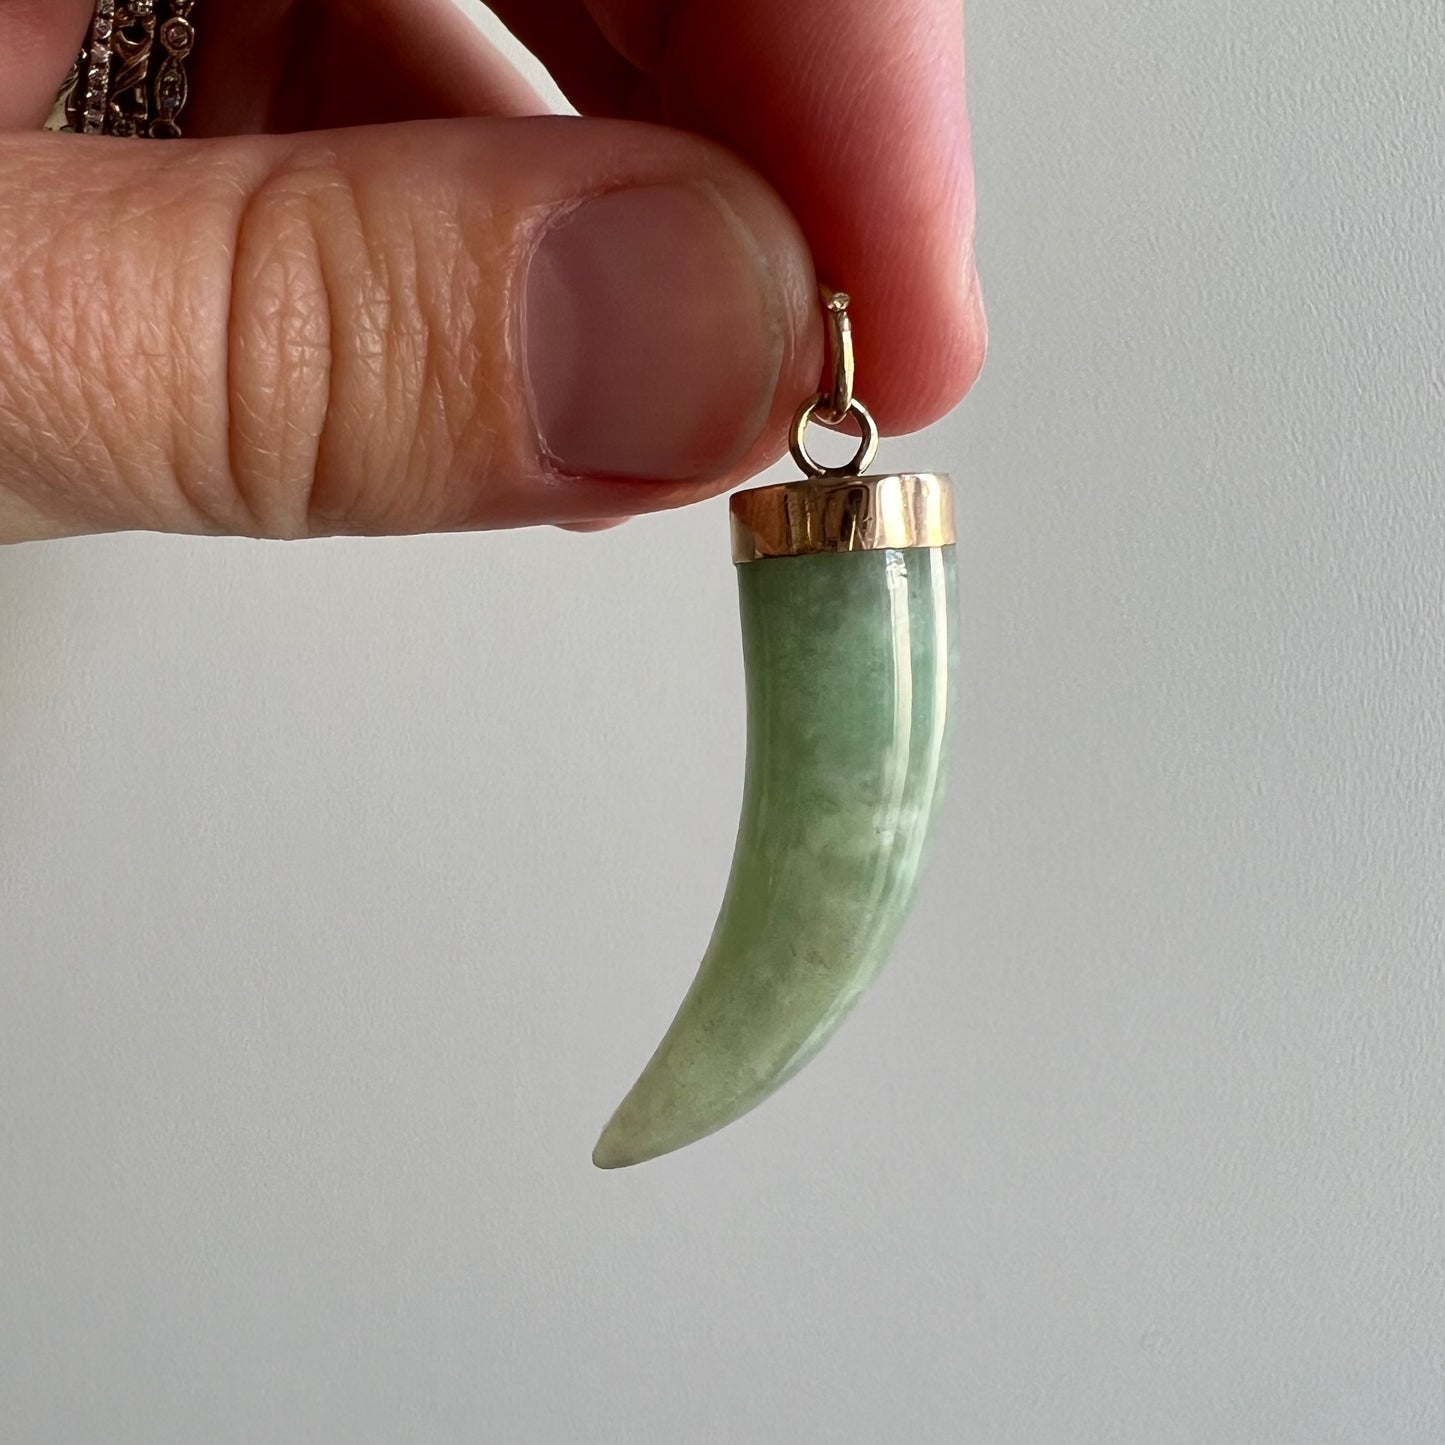 A N T I Q U E // enviable tusk / 14k green jade tusk or talon shaped pendant